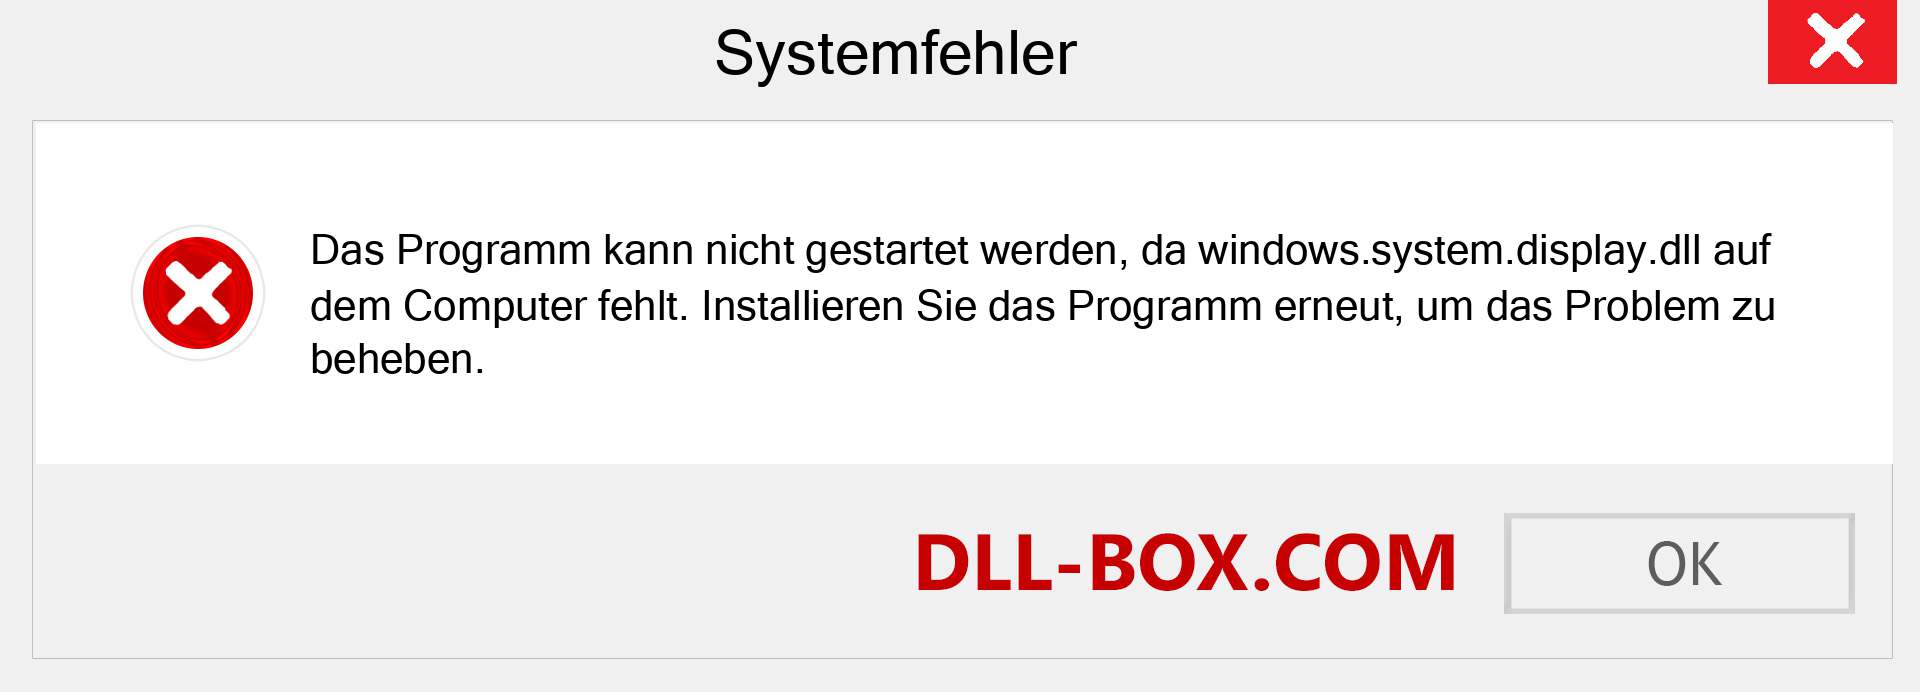 windows.system.display.dll-Datei fehlt?. Download für Windows 7, 8, 10 - Fix windows.system.display dll Missing Error unter Windows, Fotos, Bildern